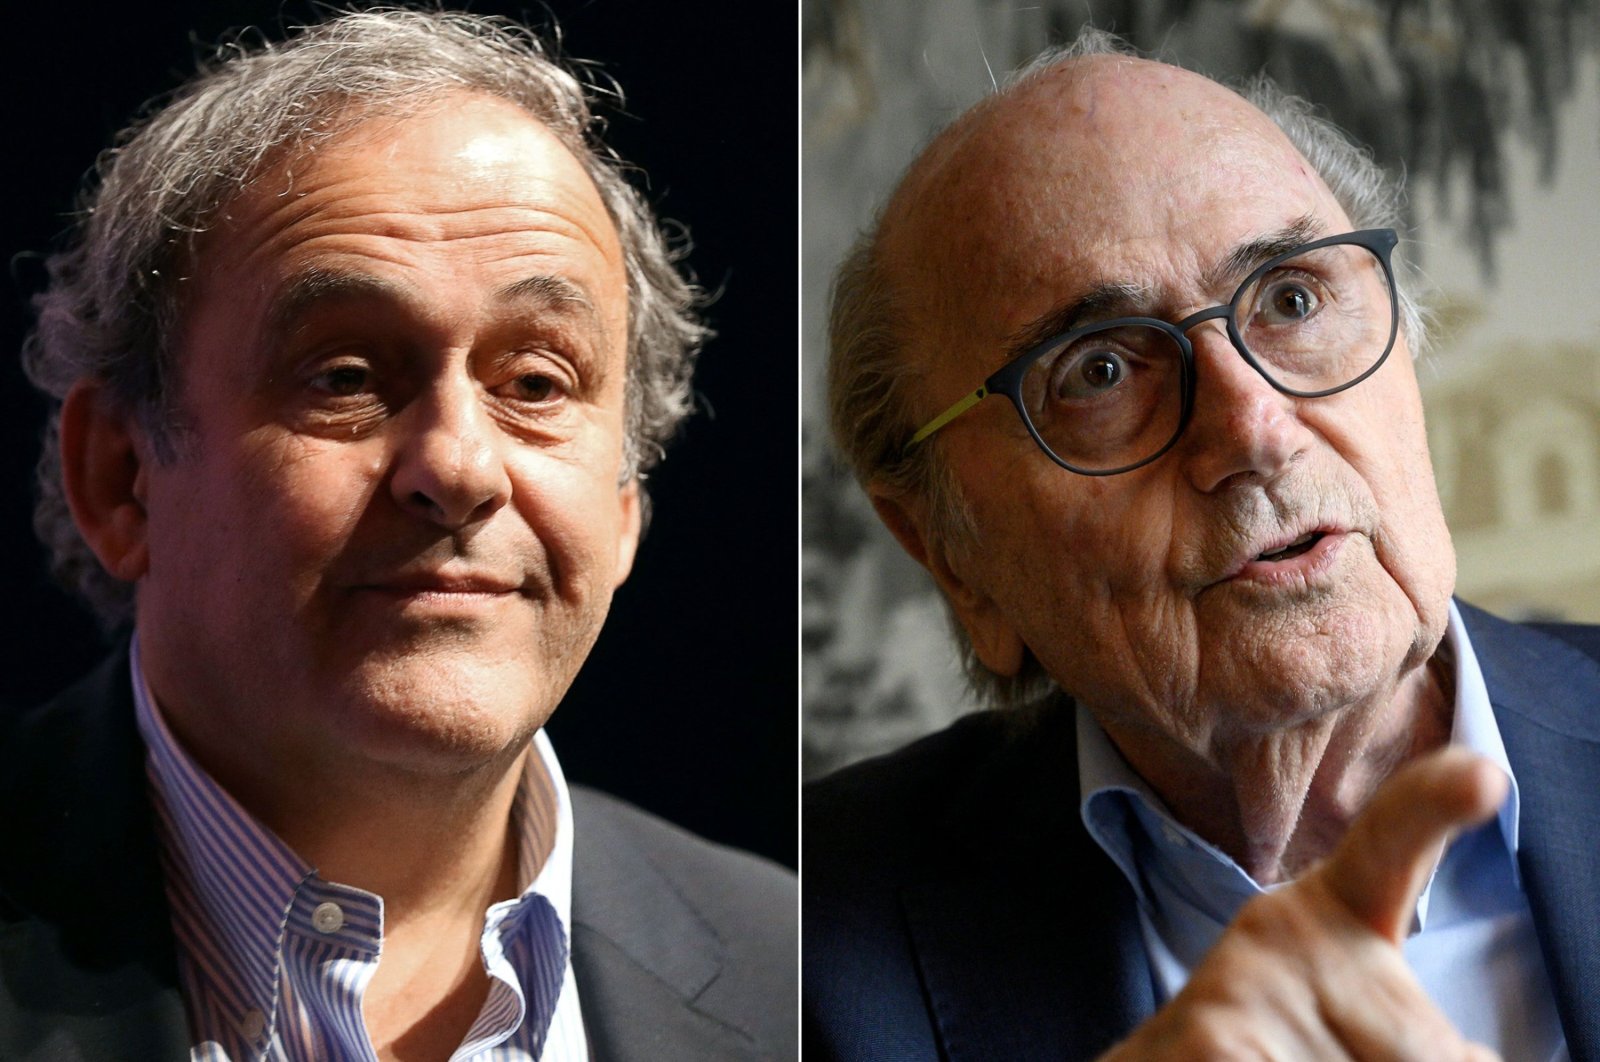 Pengacara mengajukan banding atas pembebasan Blatter, Platini dalam kasus penipuan FIFA